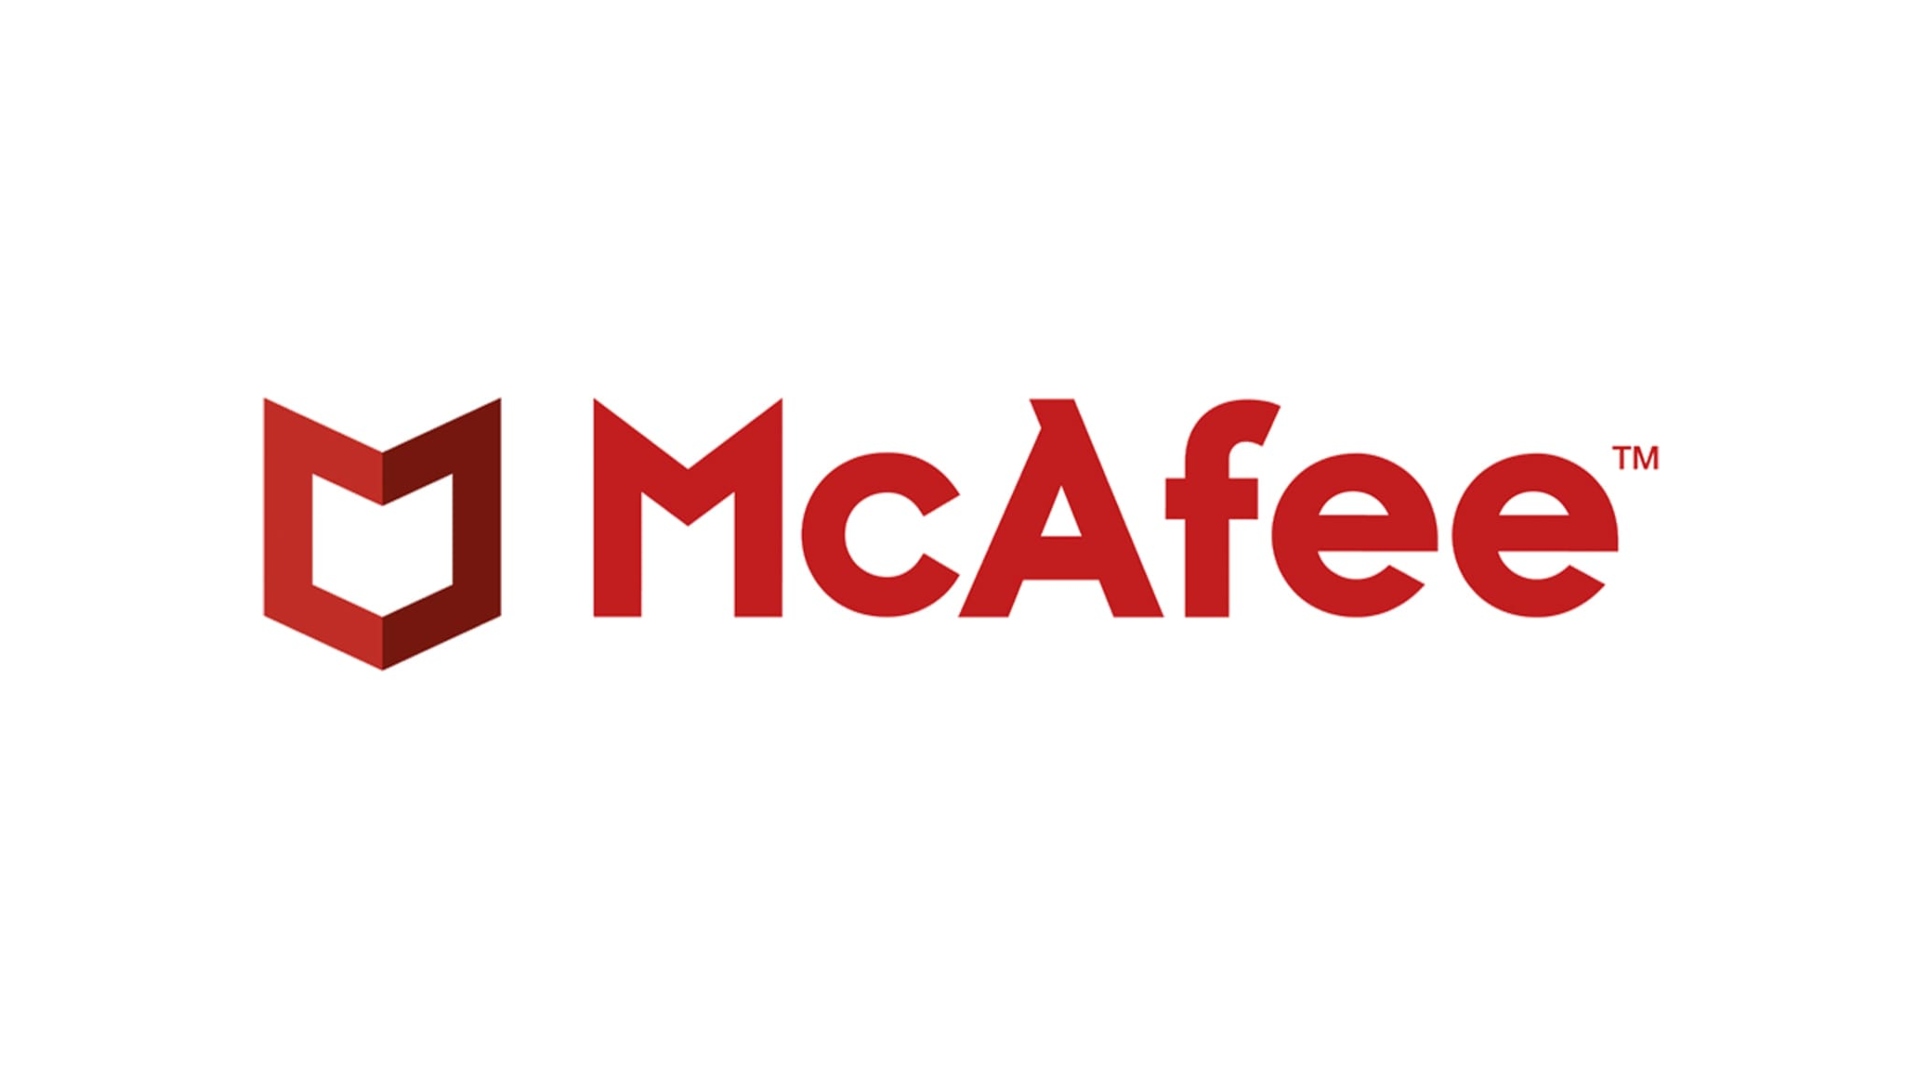 Antivirus tốt nhất: McAfee được viết bằng màu đỏ trên nền trắng cùng với phù hiệu của nó